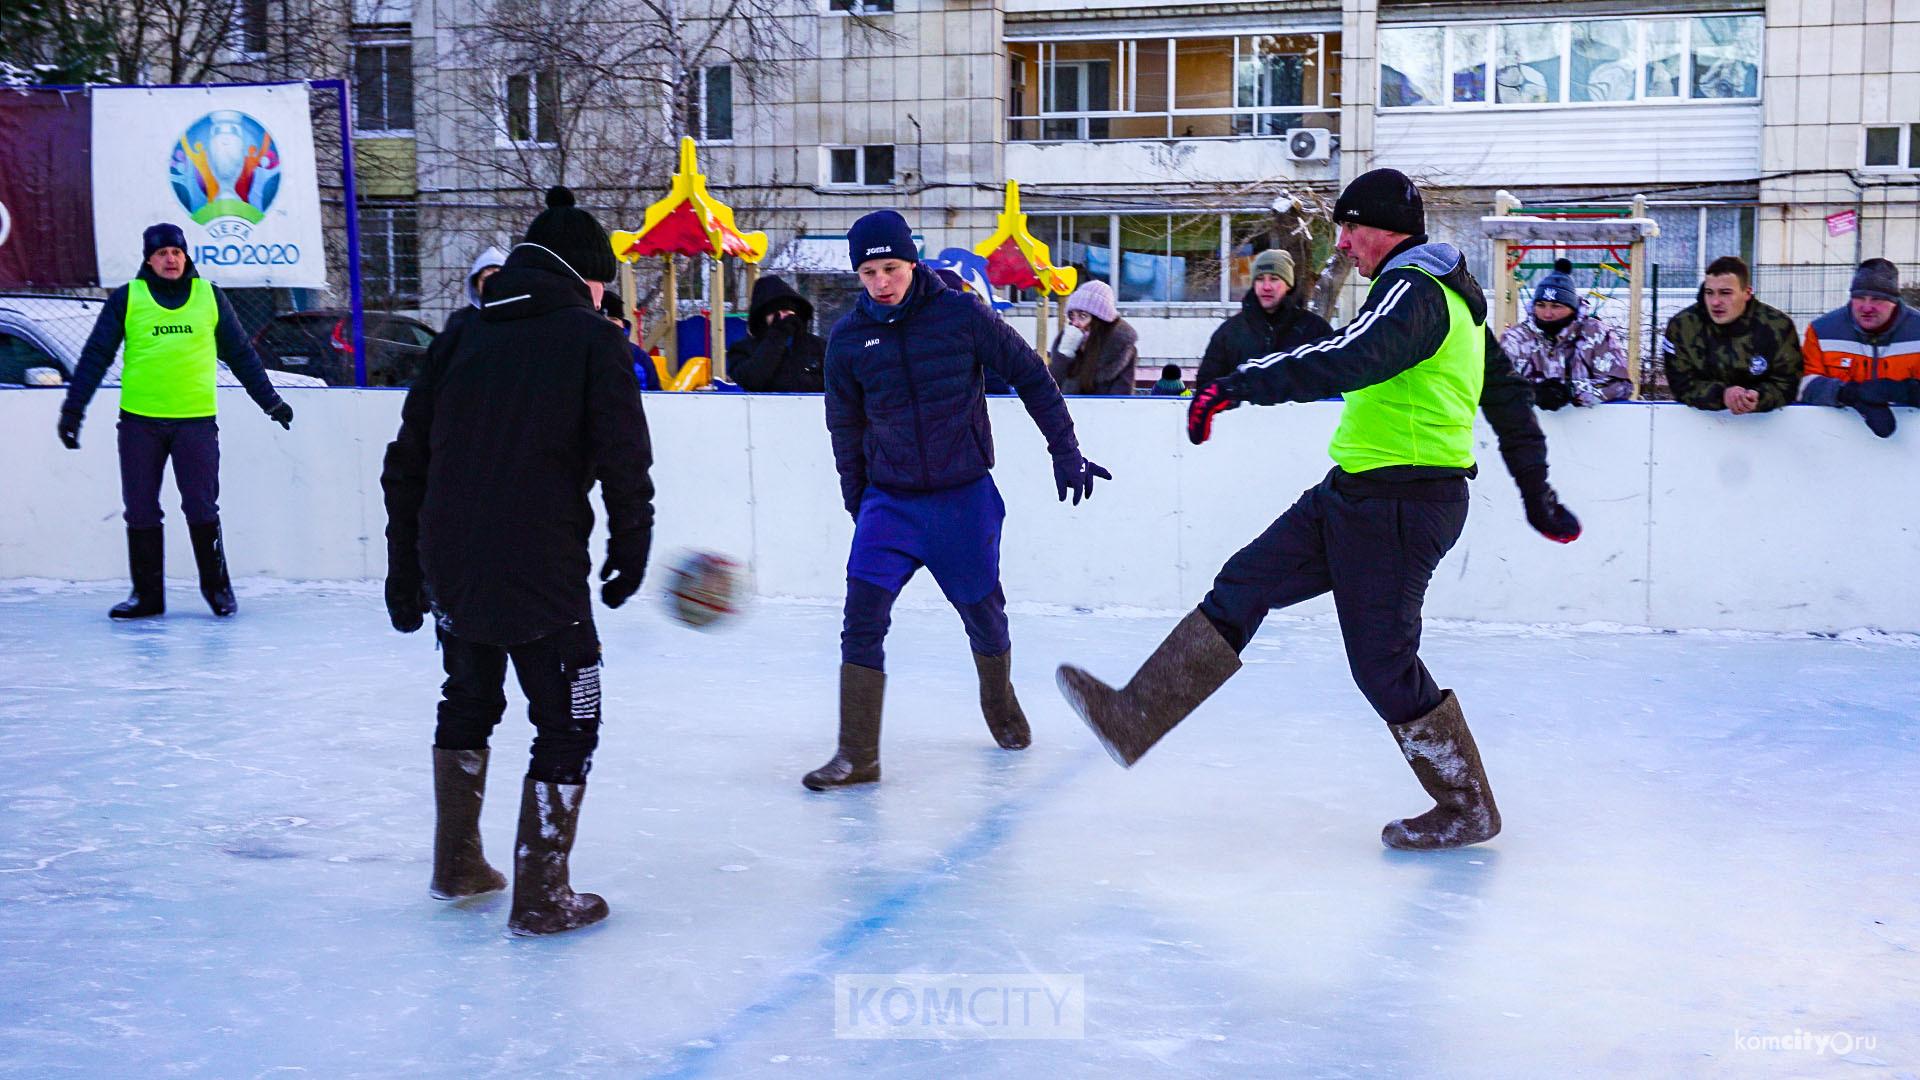 Комсомольчан приглашают сыграть в футбол в валенках